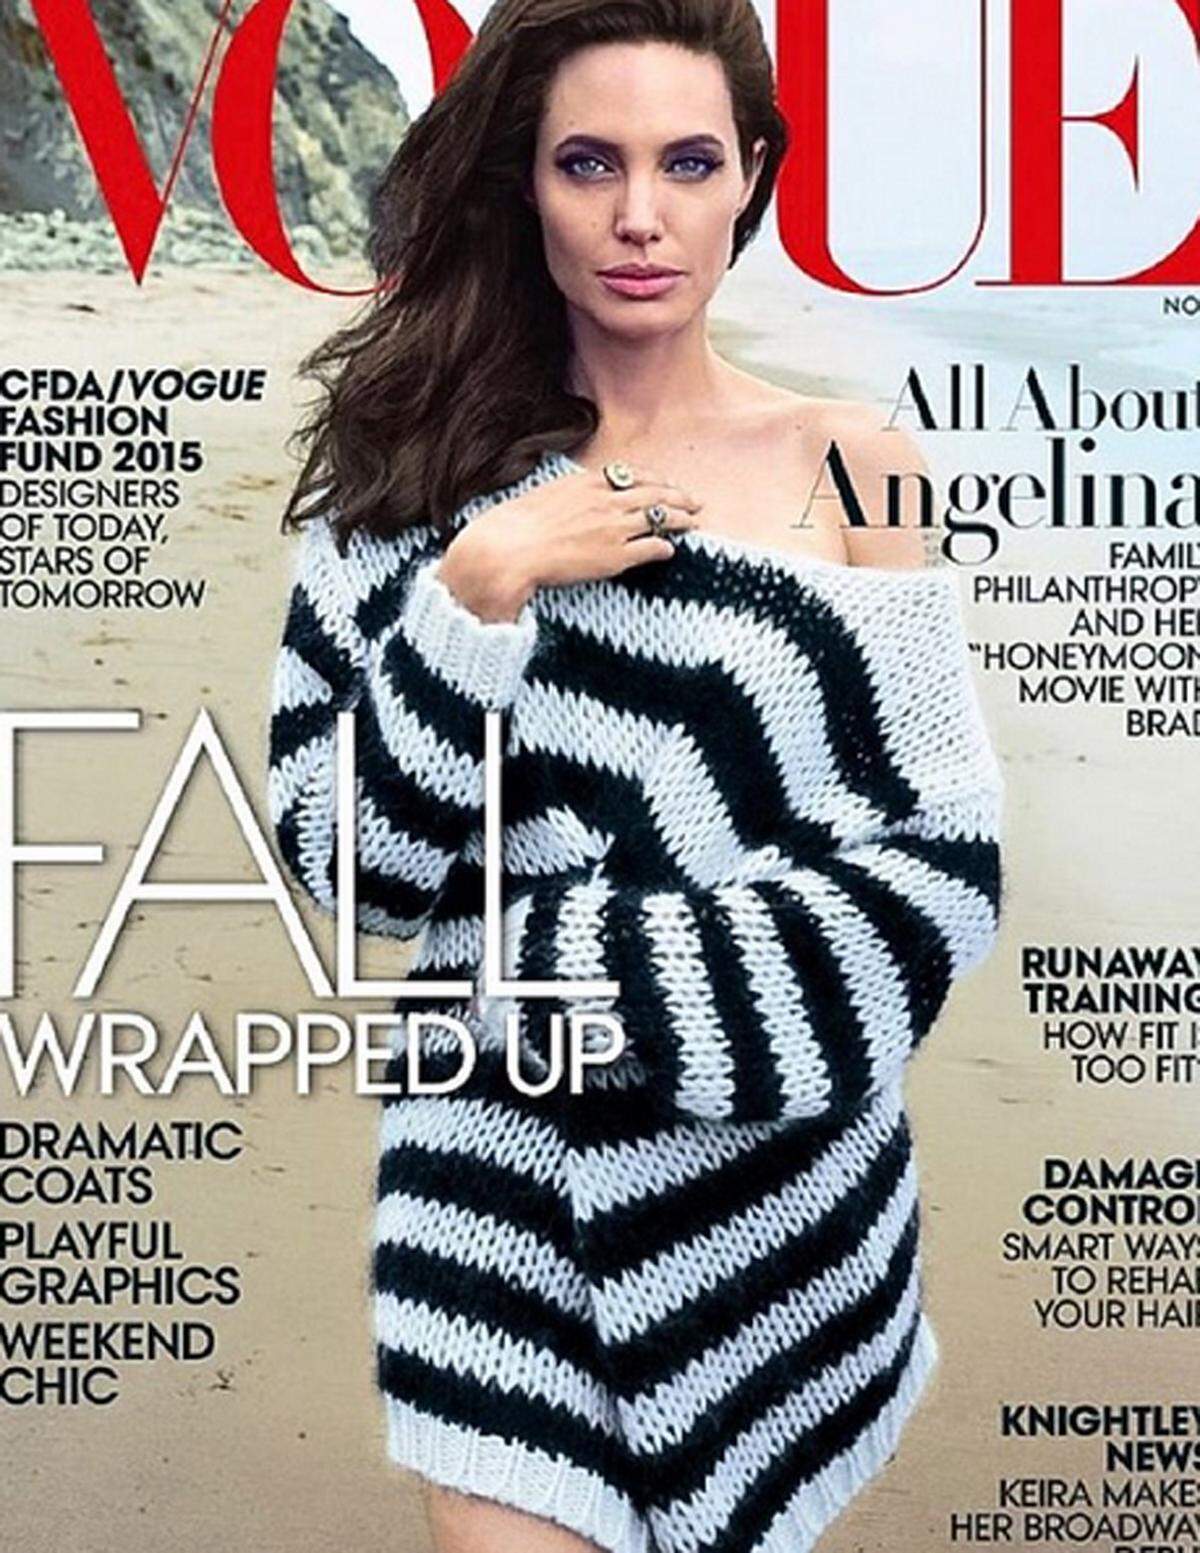 Angelina Jolie war das Covergirl für die Novemberausgabe der "Vogue". In der Schaustrecke ist sie aber nicht der einzige Star, denn auch ihre Kinder sind in der Modebibel zu sehen.